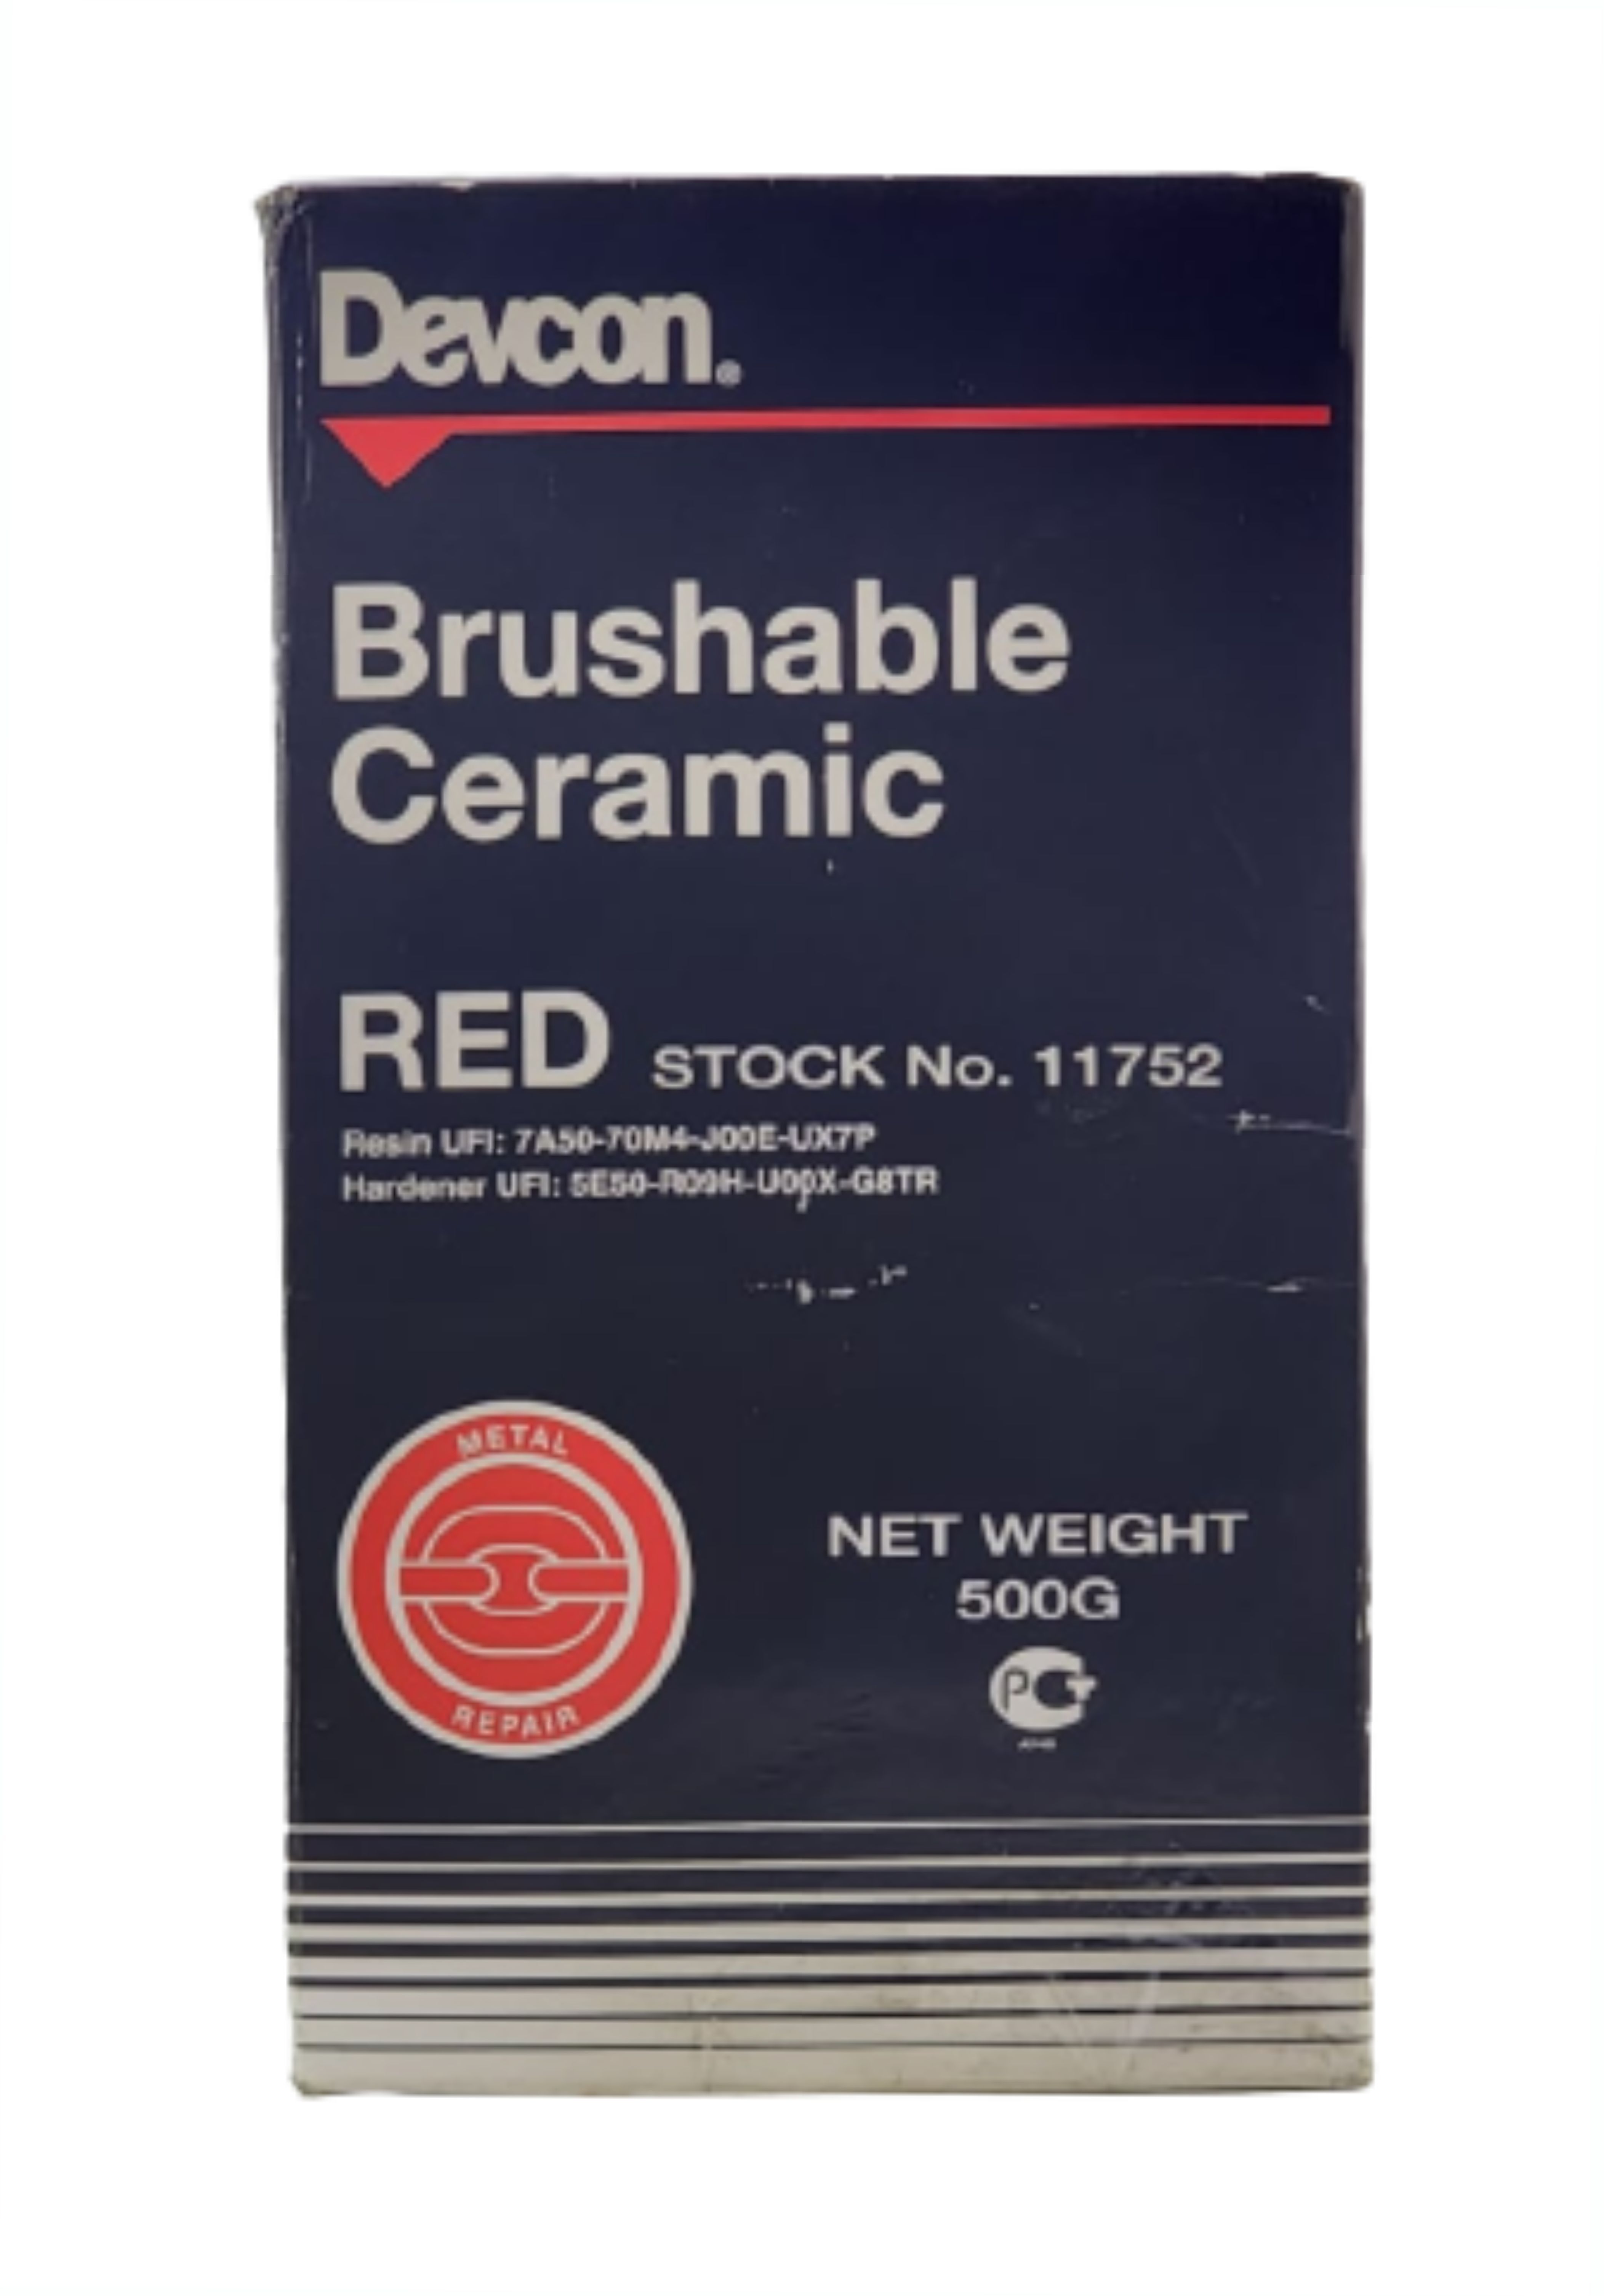 Devcon Brushable Ceramic Red